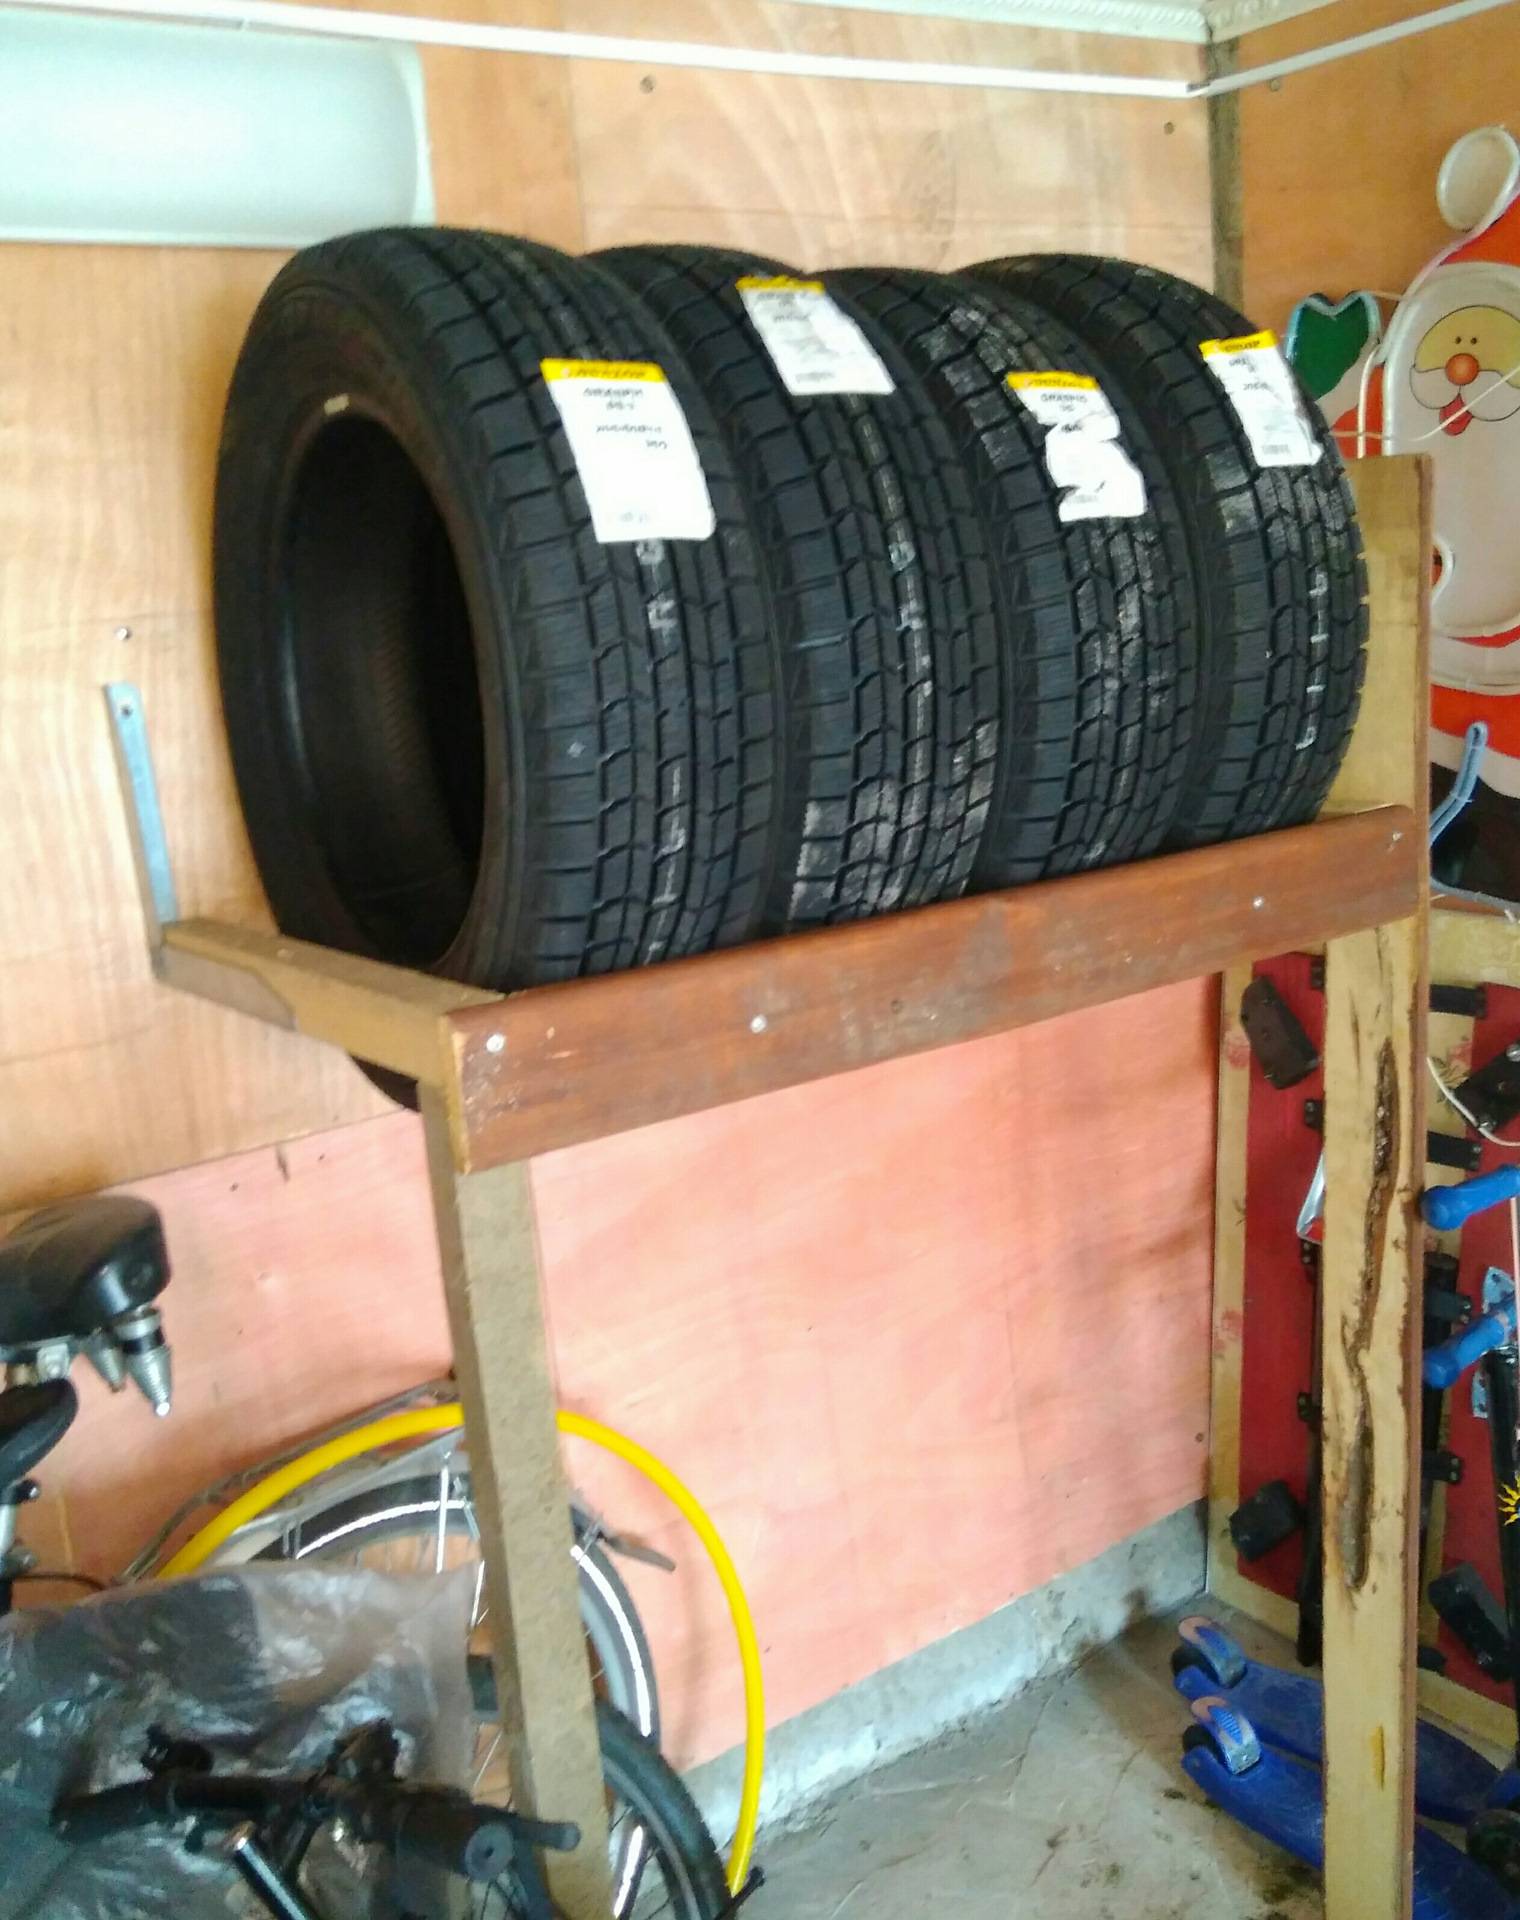 Cтеллажи для хранения колес в гараже - варианты конструкций